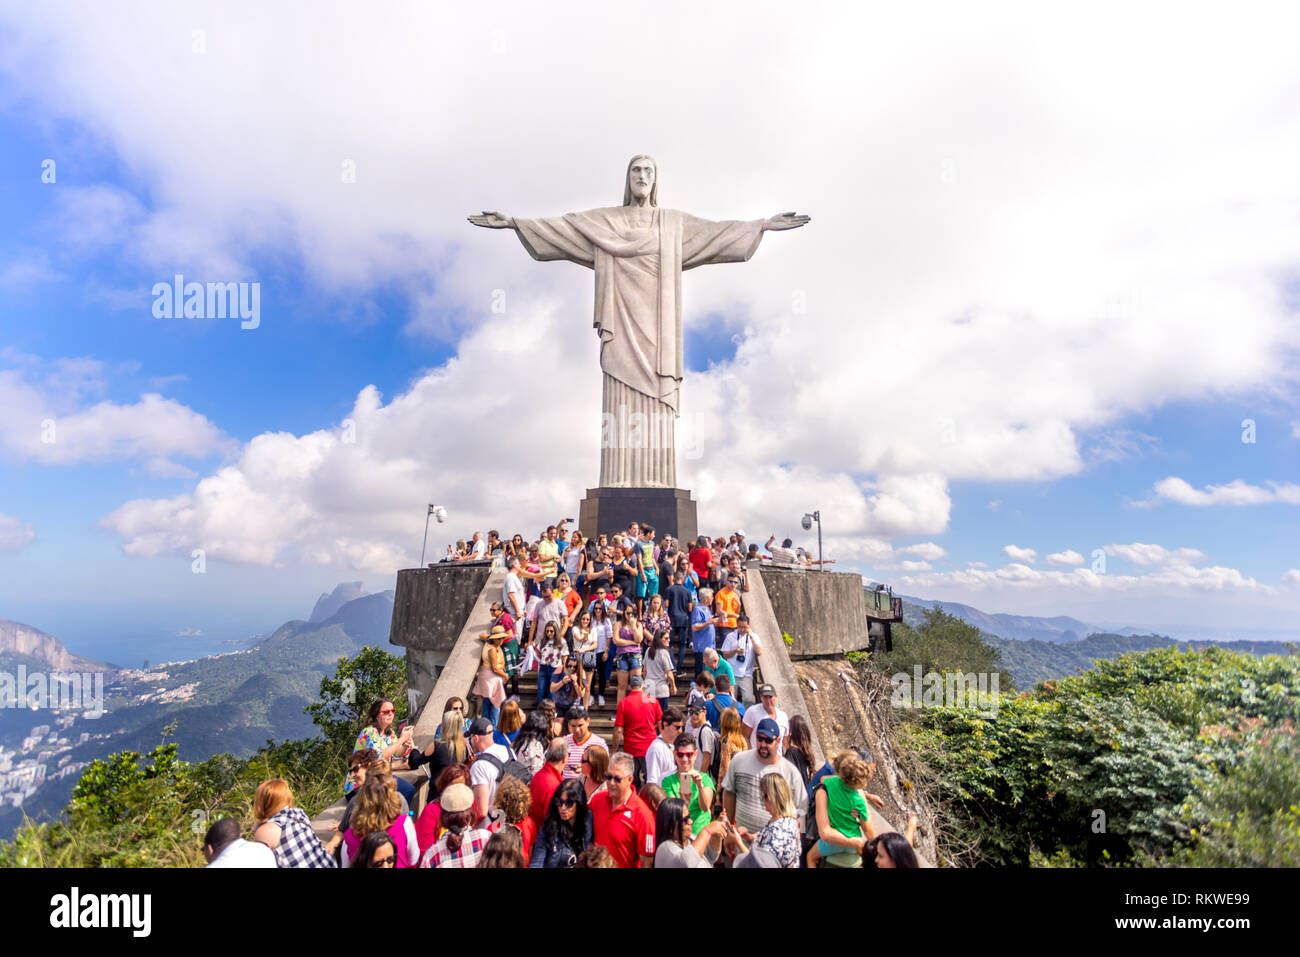 Klare Sicht auf eine Masse von Touristen oben auf dem Berg Corcovado in Rio de Janeiro mit der Christusstatue Hoch über Ihnen und einer Wolke hinter Stockfoto